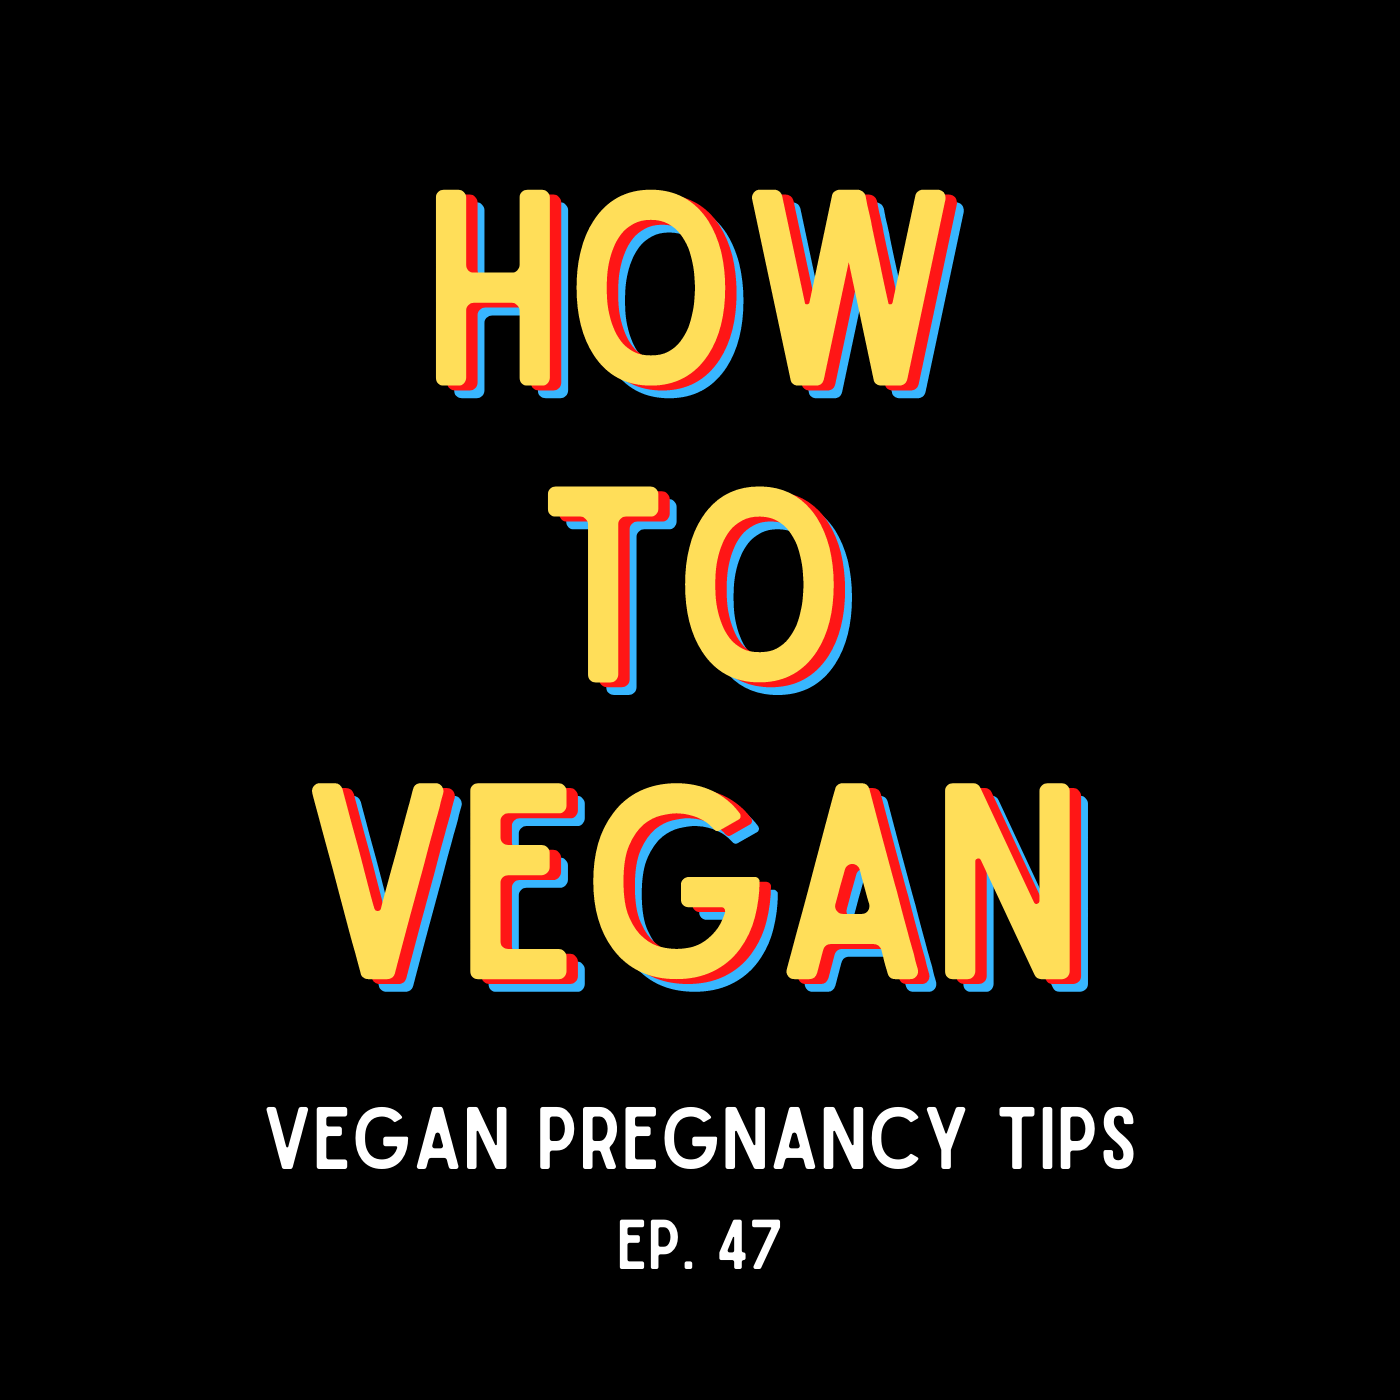 Vegan Pregnancy Tips